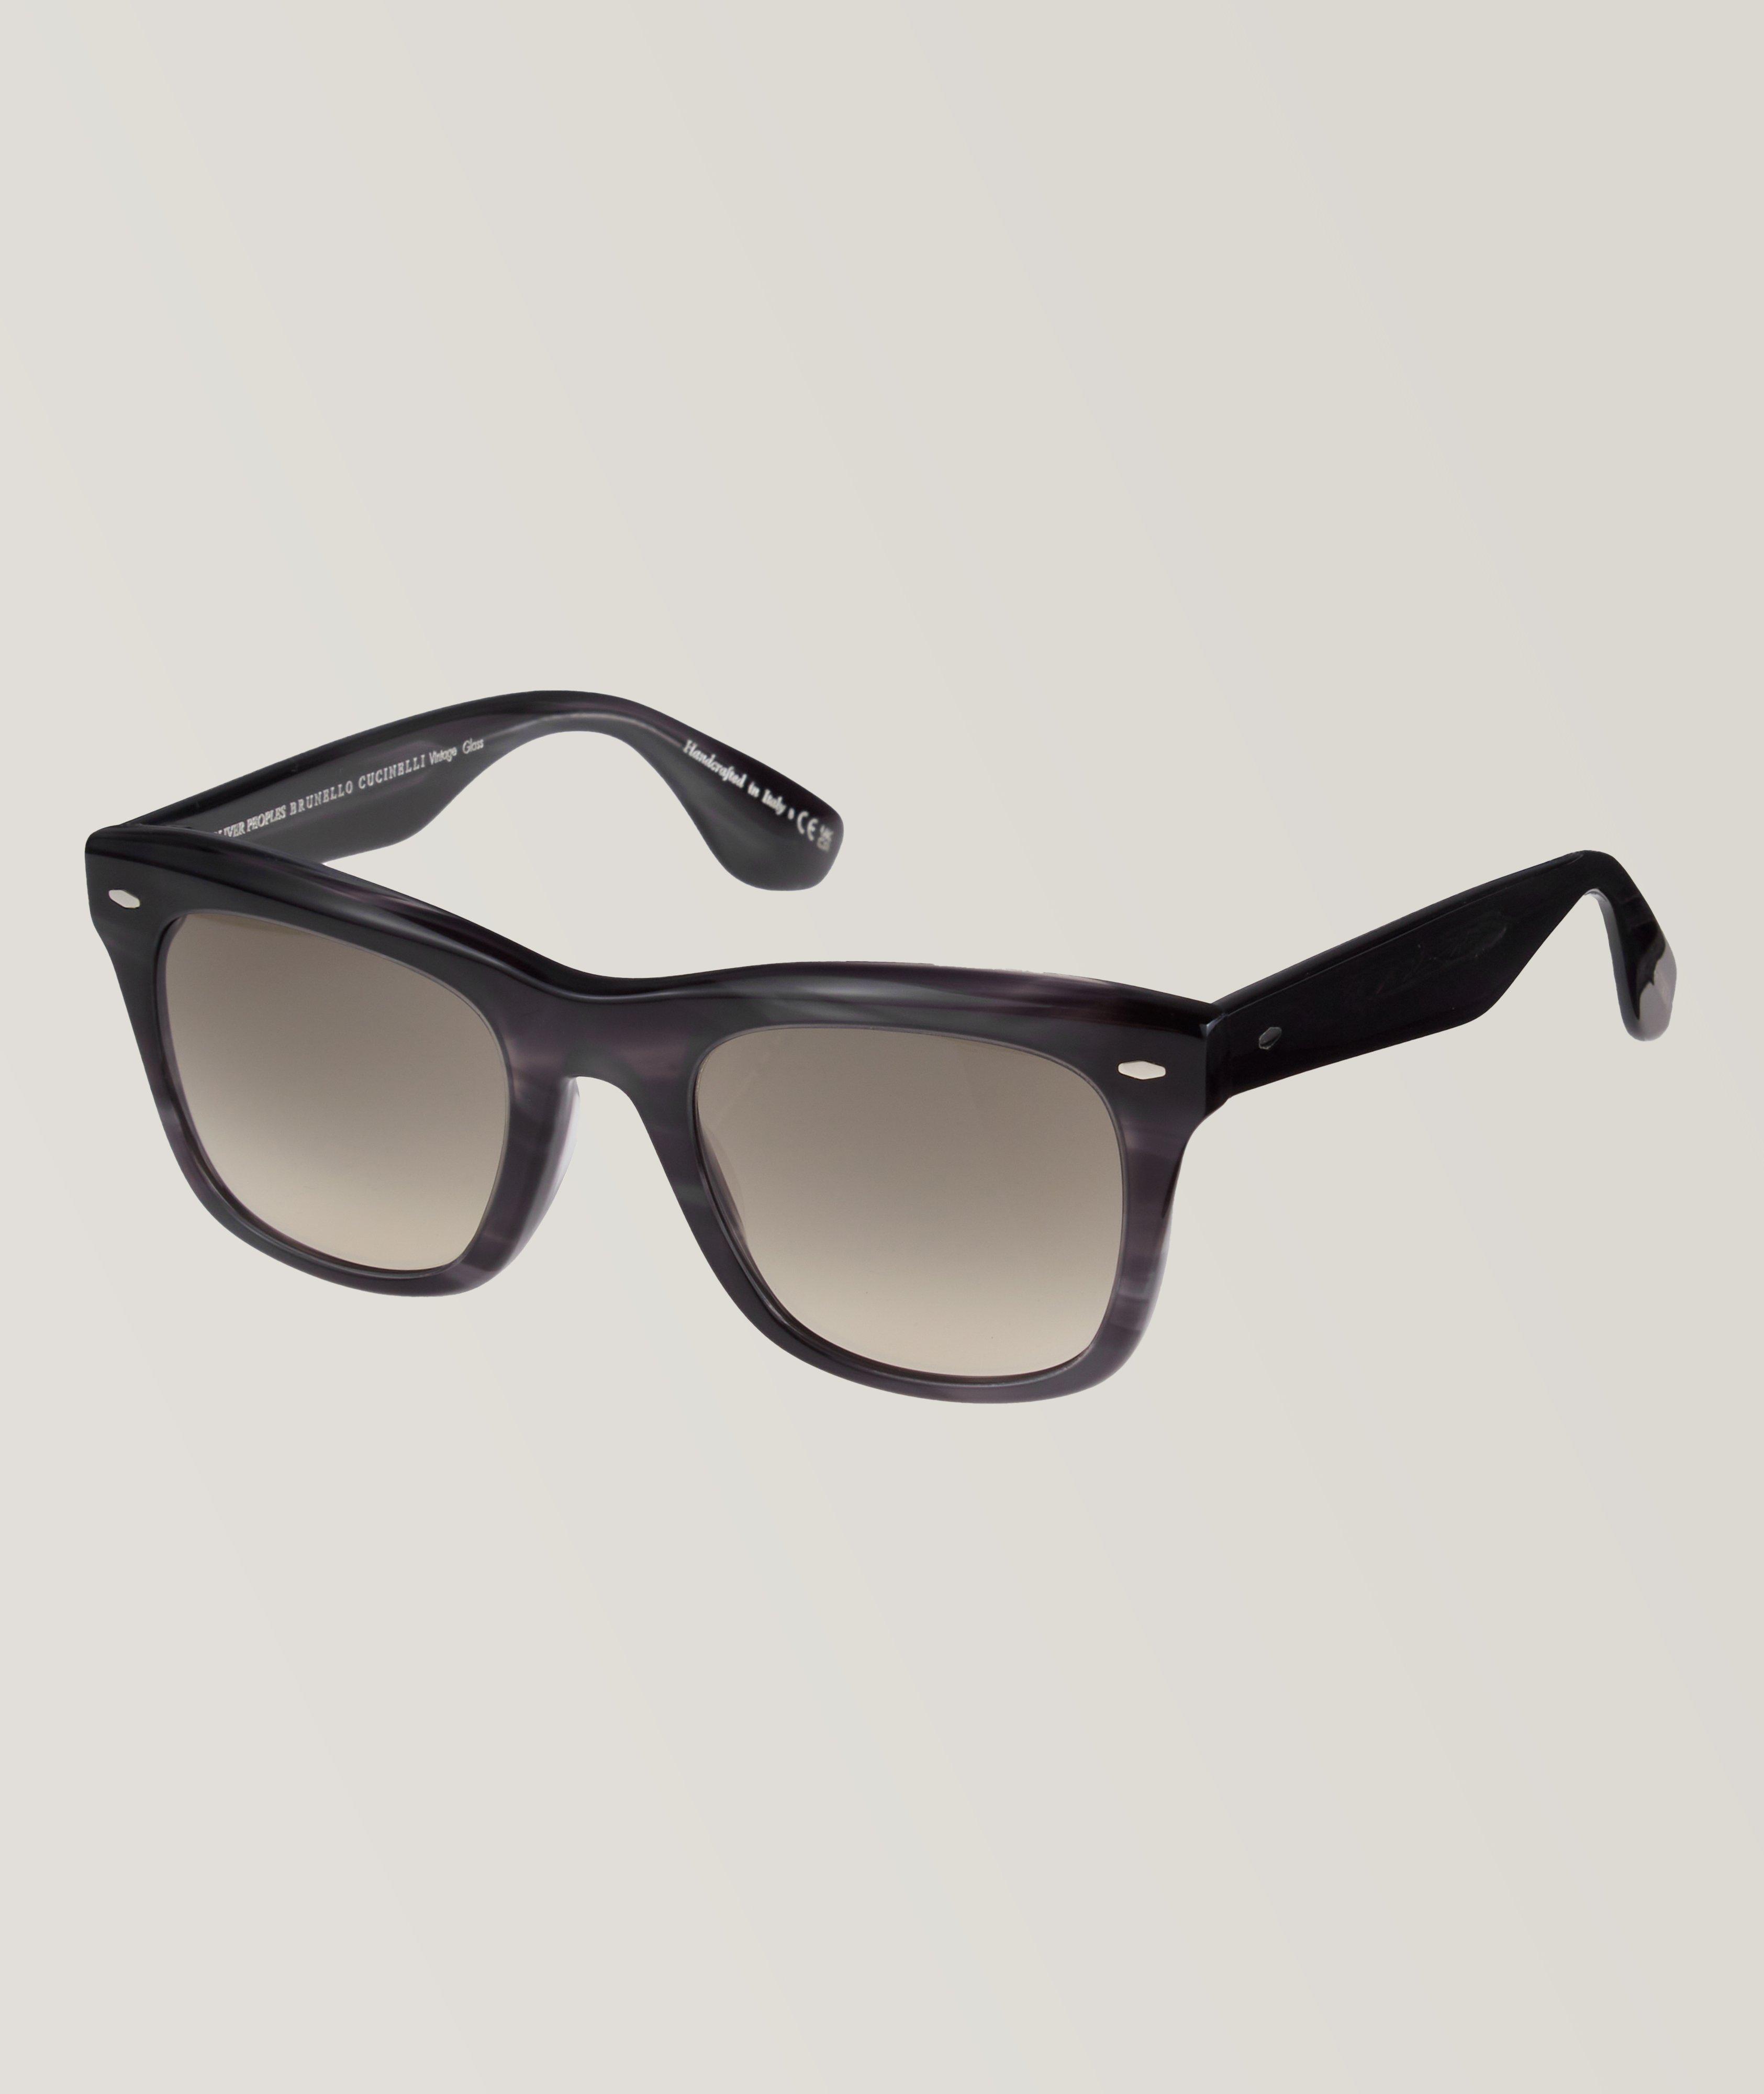 Mr. Brunello Square Frame Sunglasses image 0